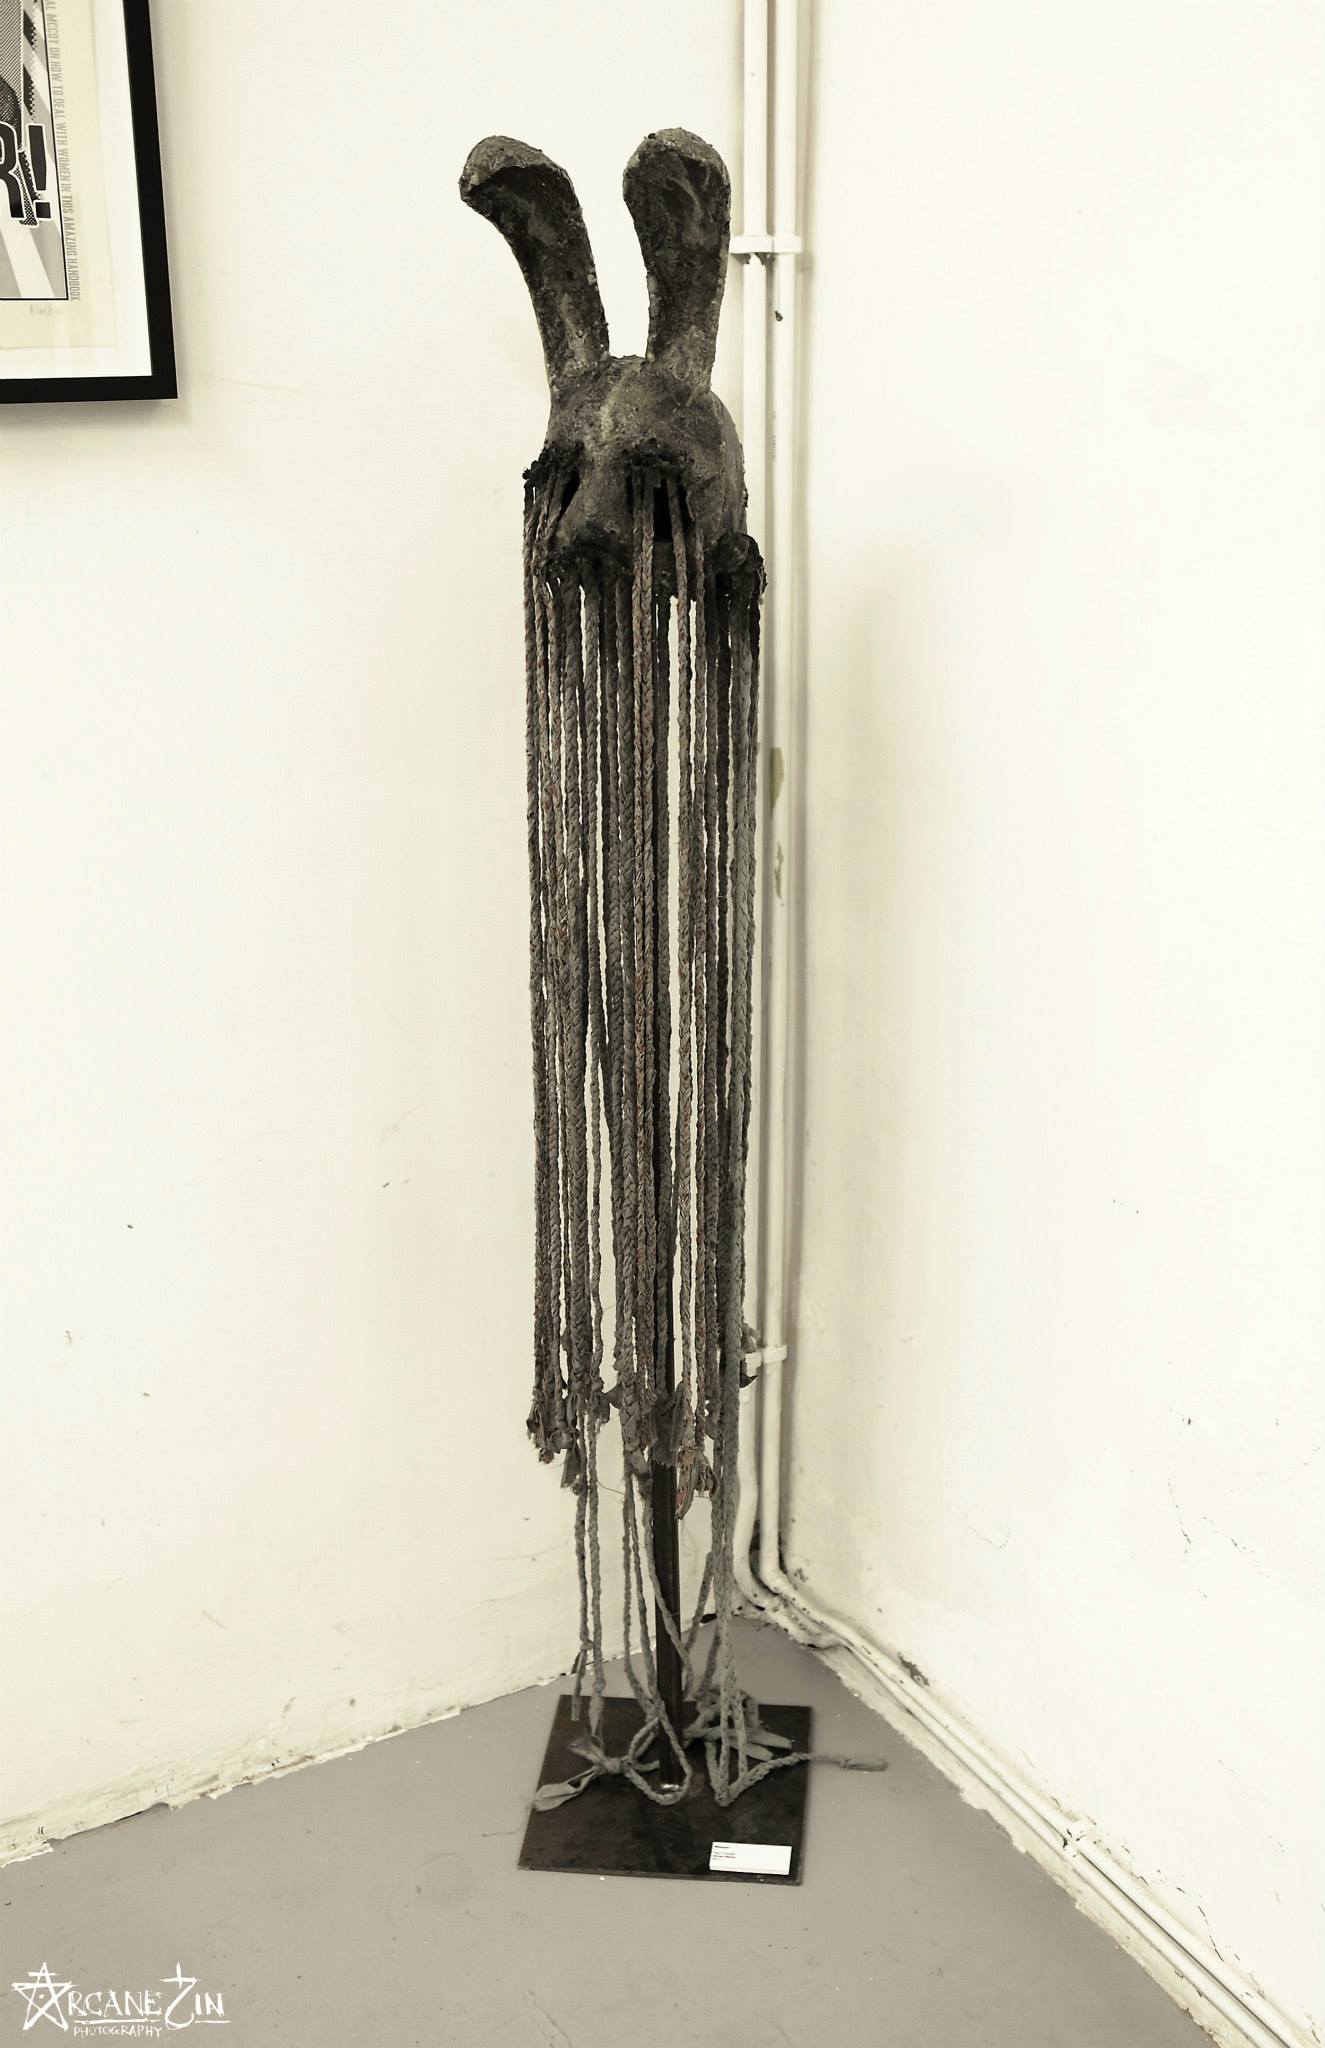 Paul Toupet – Sculpture – Copyright © Arcane Sin 2013